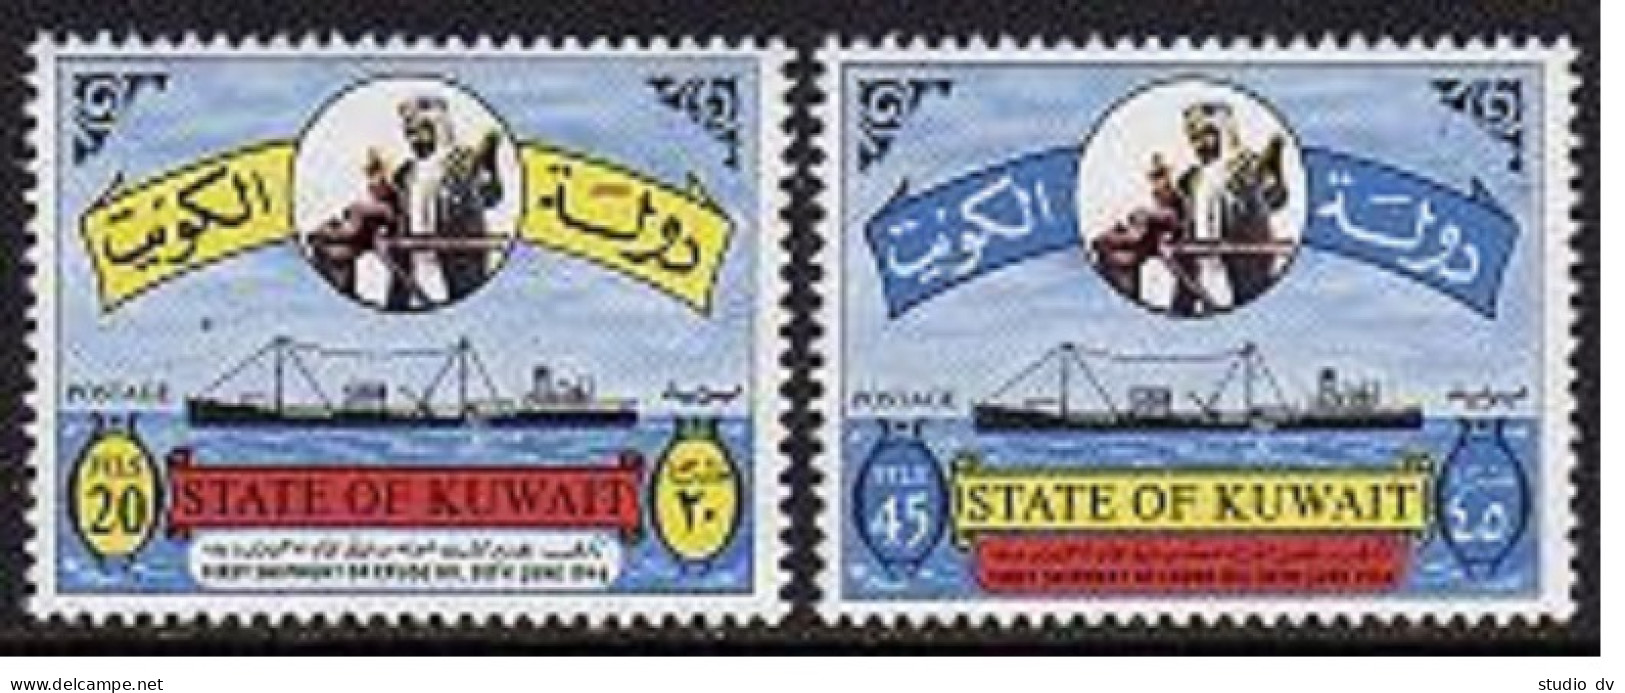 Kuwait 329-330, MNH. Mi 323-324. Shipment Of Crude Oil, 20th Ann.Tanker. 1966. - Kuwait